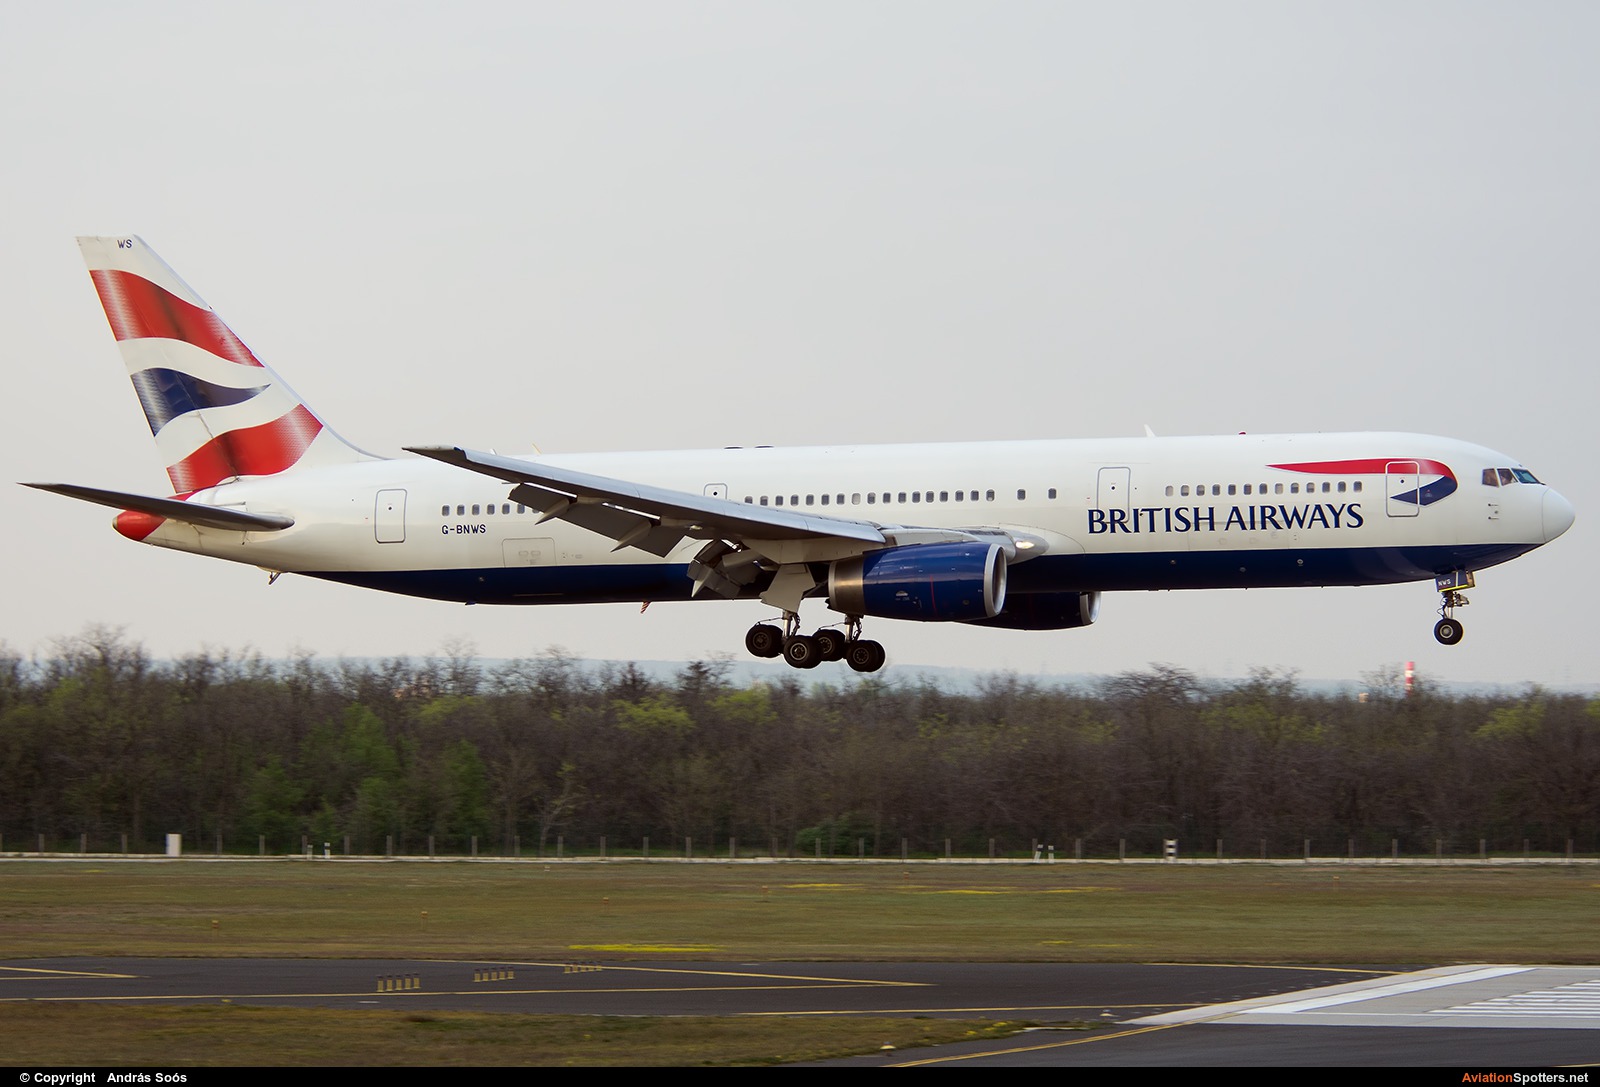 British Airways  -  767-300ER  (G-BNWS) By András Soós (sas1965)